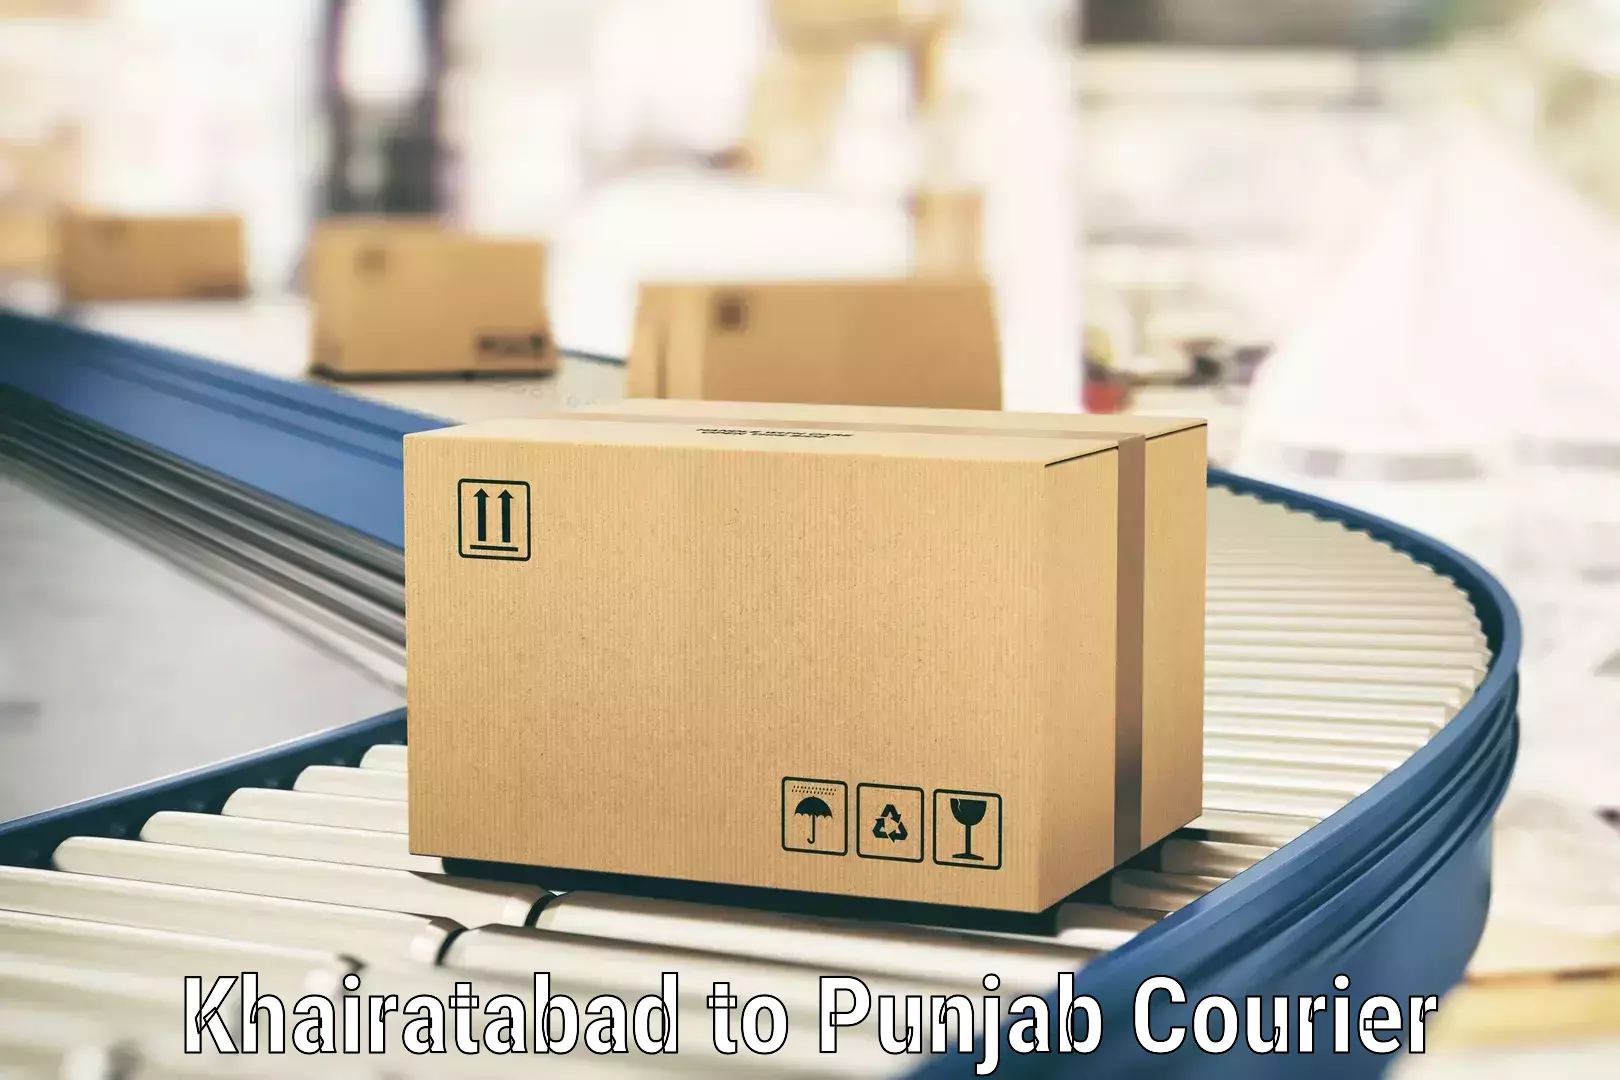 Efficient parcel service Khairatabad to Sangrur